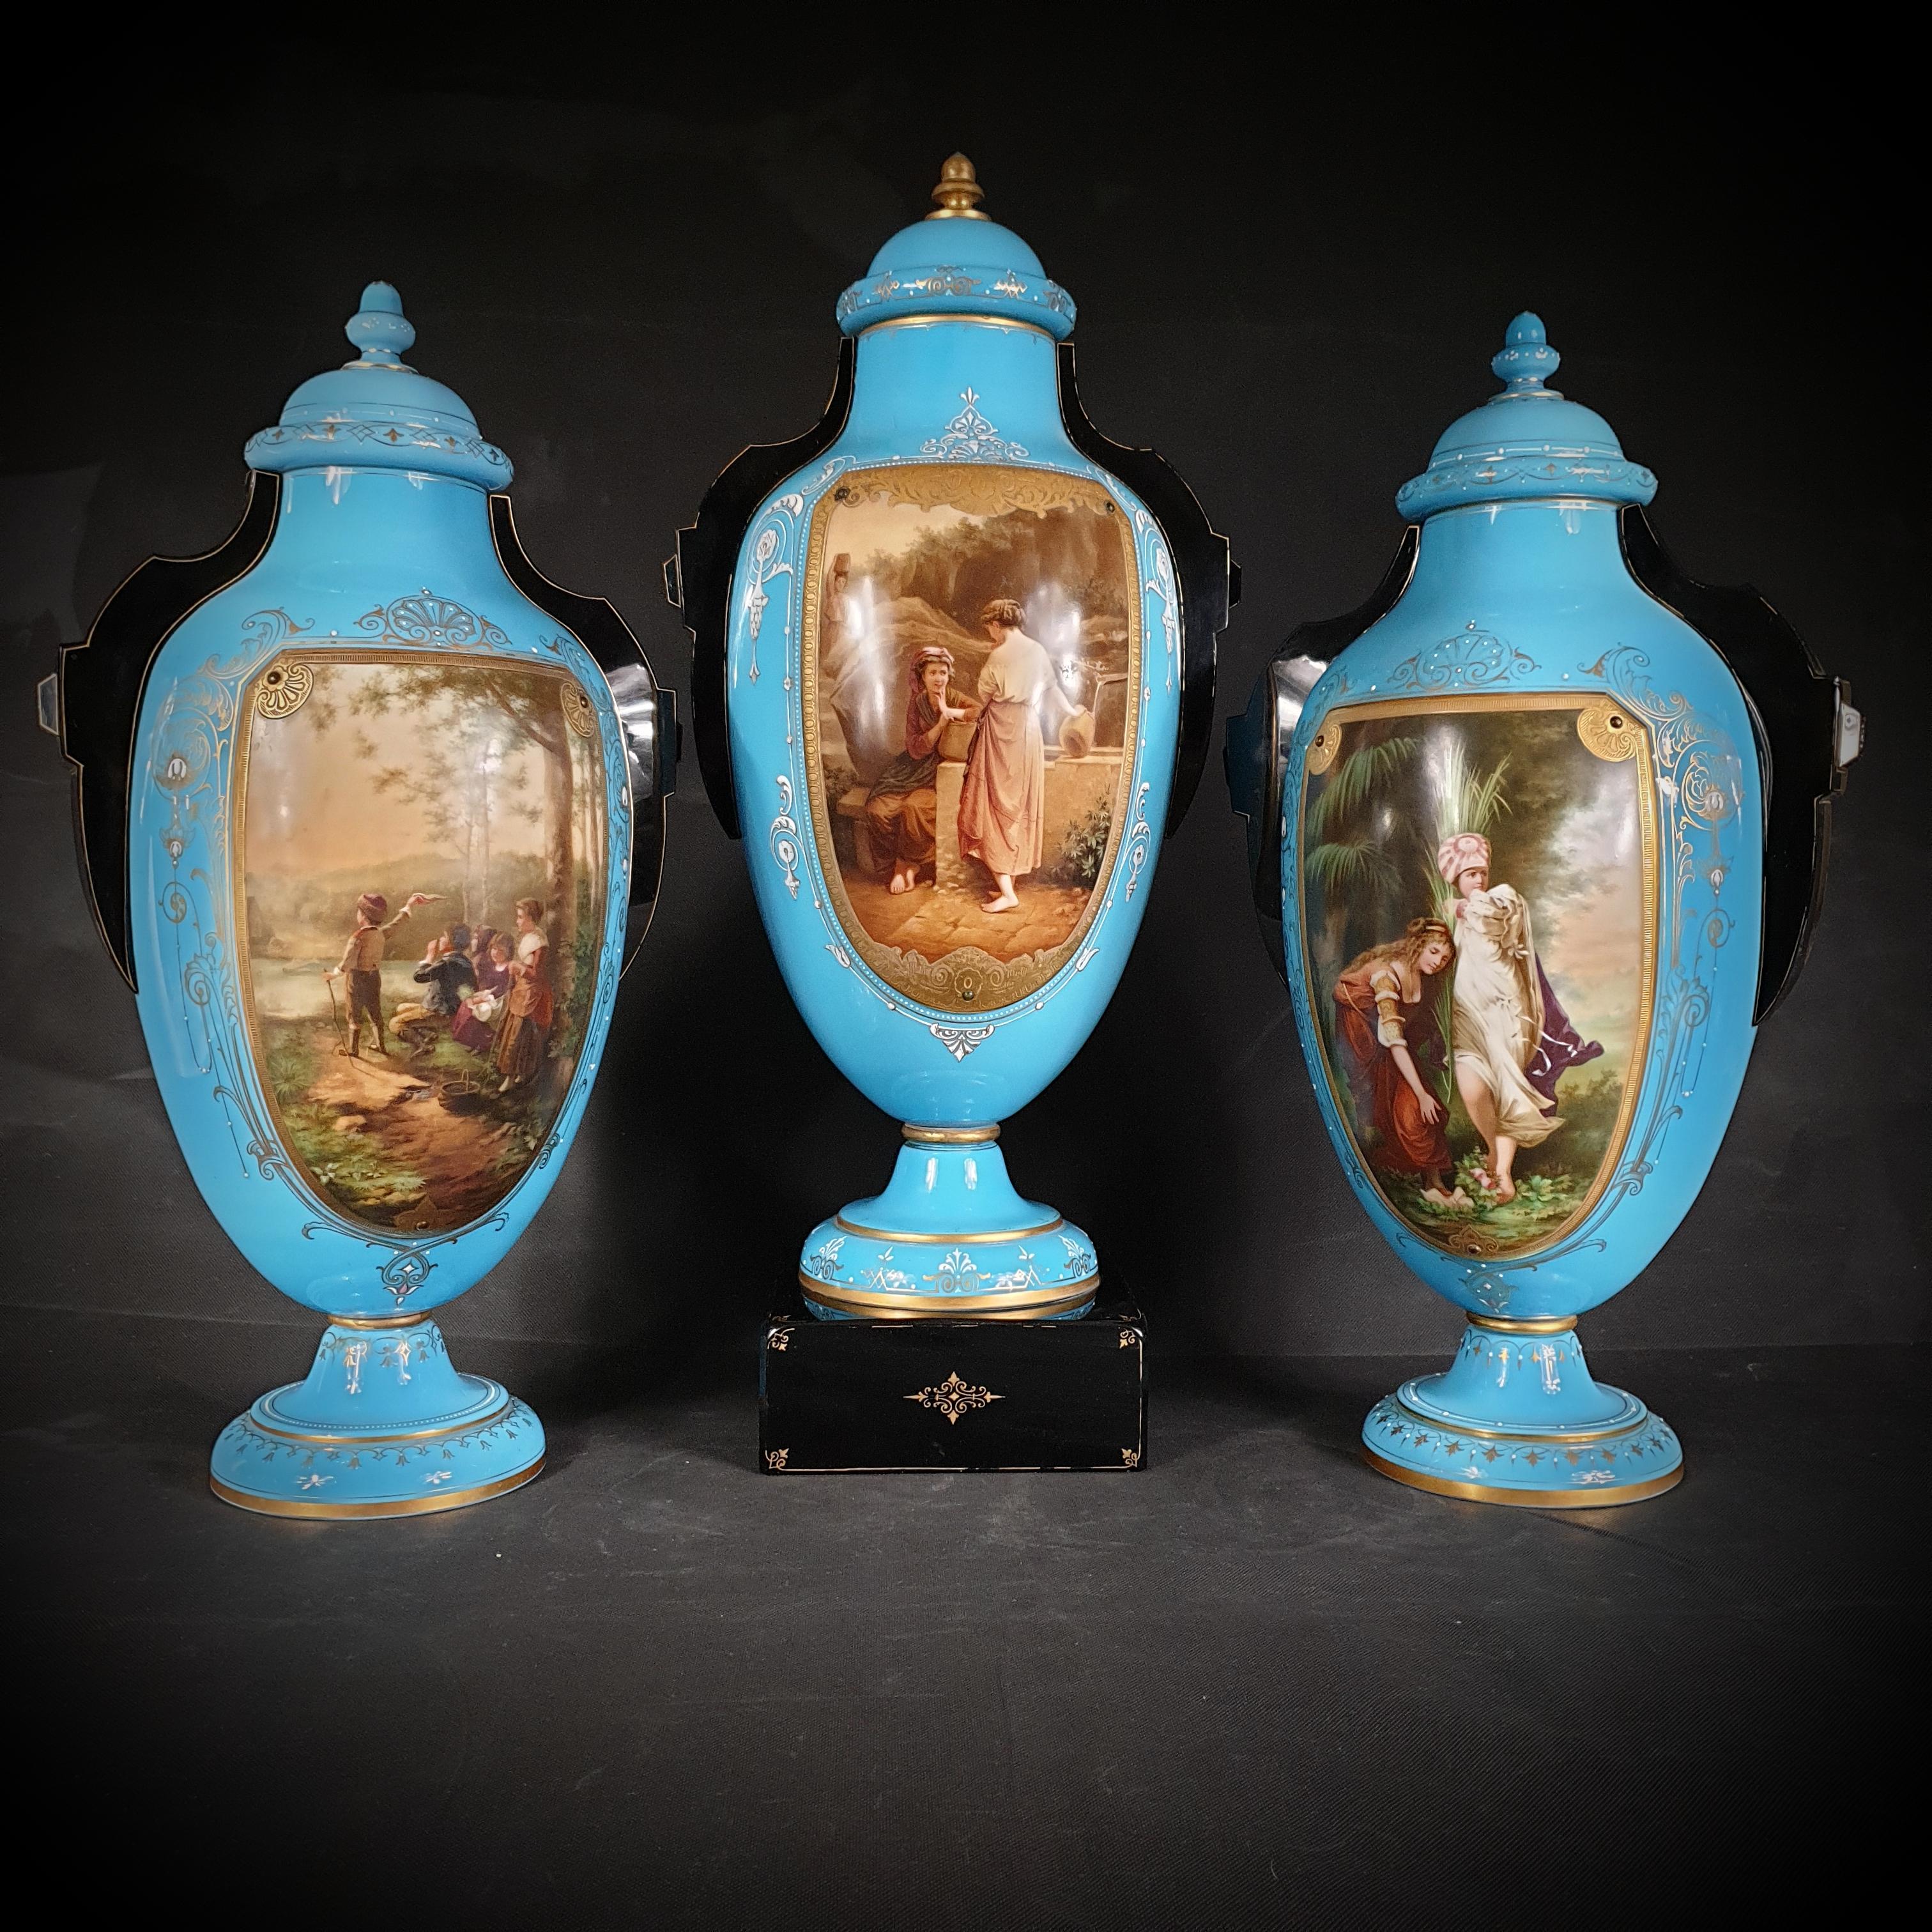 Eine spektakuläre Sammlung von drei bemalten und vergoldeten blauen Opalglasurnen wurde zwischen 1845 und 1855 in Deutschland hergestellt. 
Diese atemberaubenden Stücke haben außergewöhnliche ovale Formen, die sowohl elegant als auch fesselnd